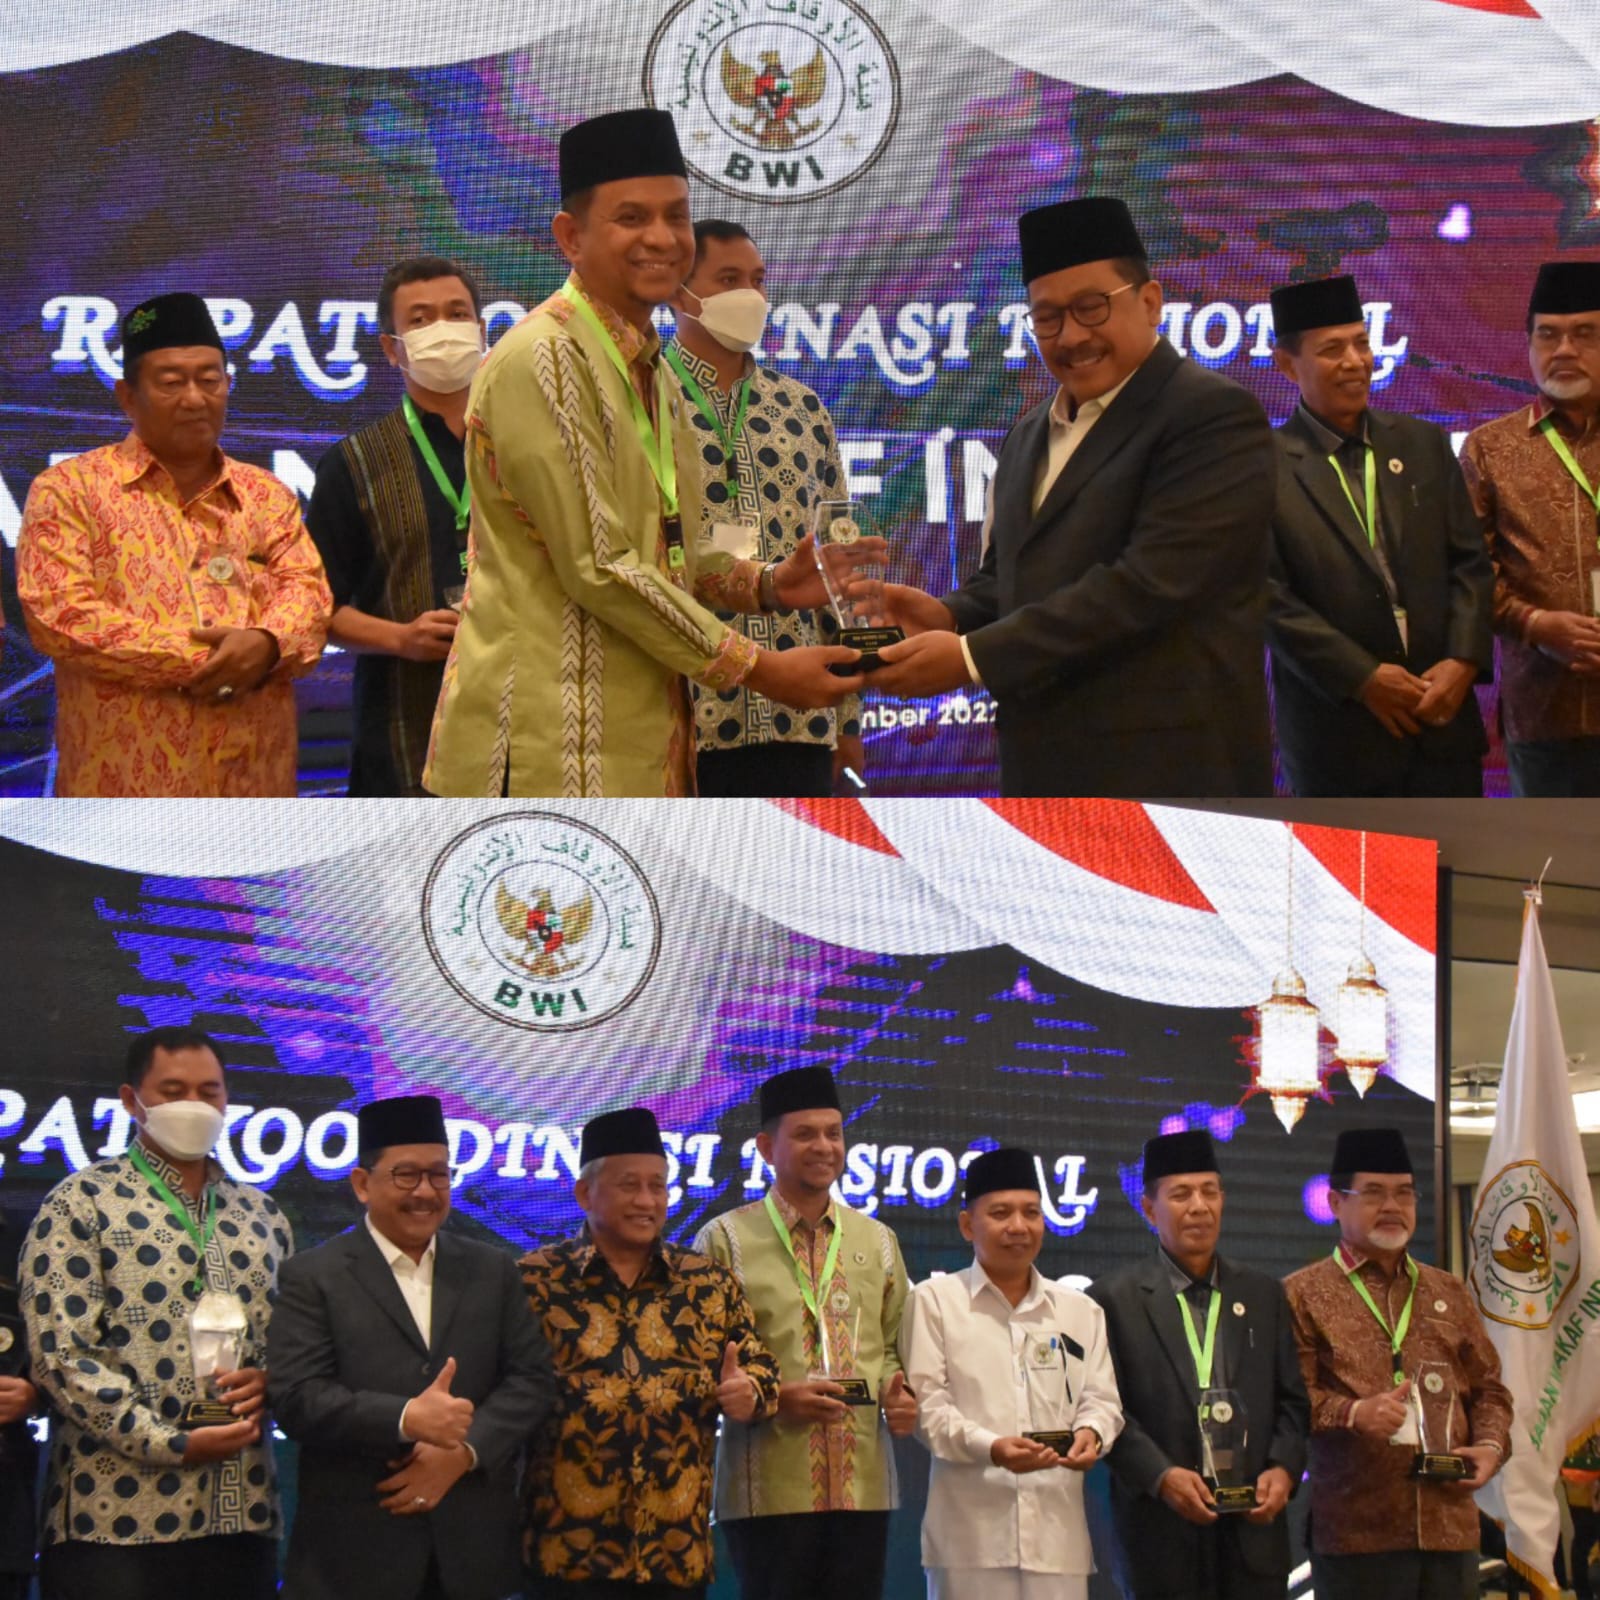 Tahun Ini,BWI Riau dinobatkan Jadi Badan Wakaf Indonesia Terbaik di Indonesia 